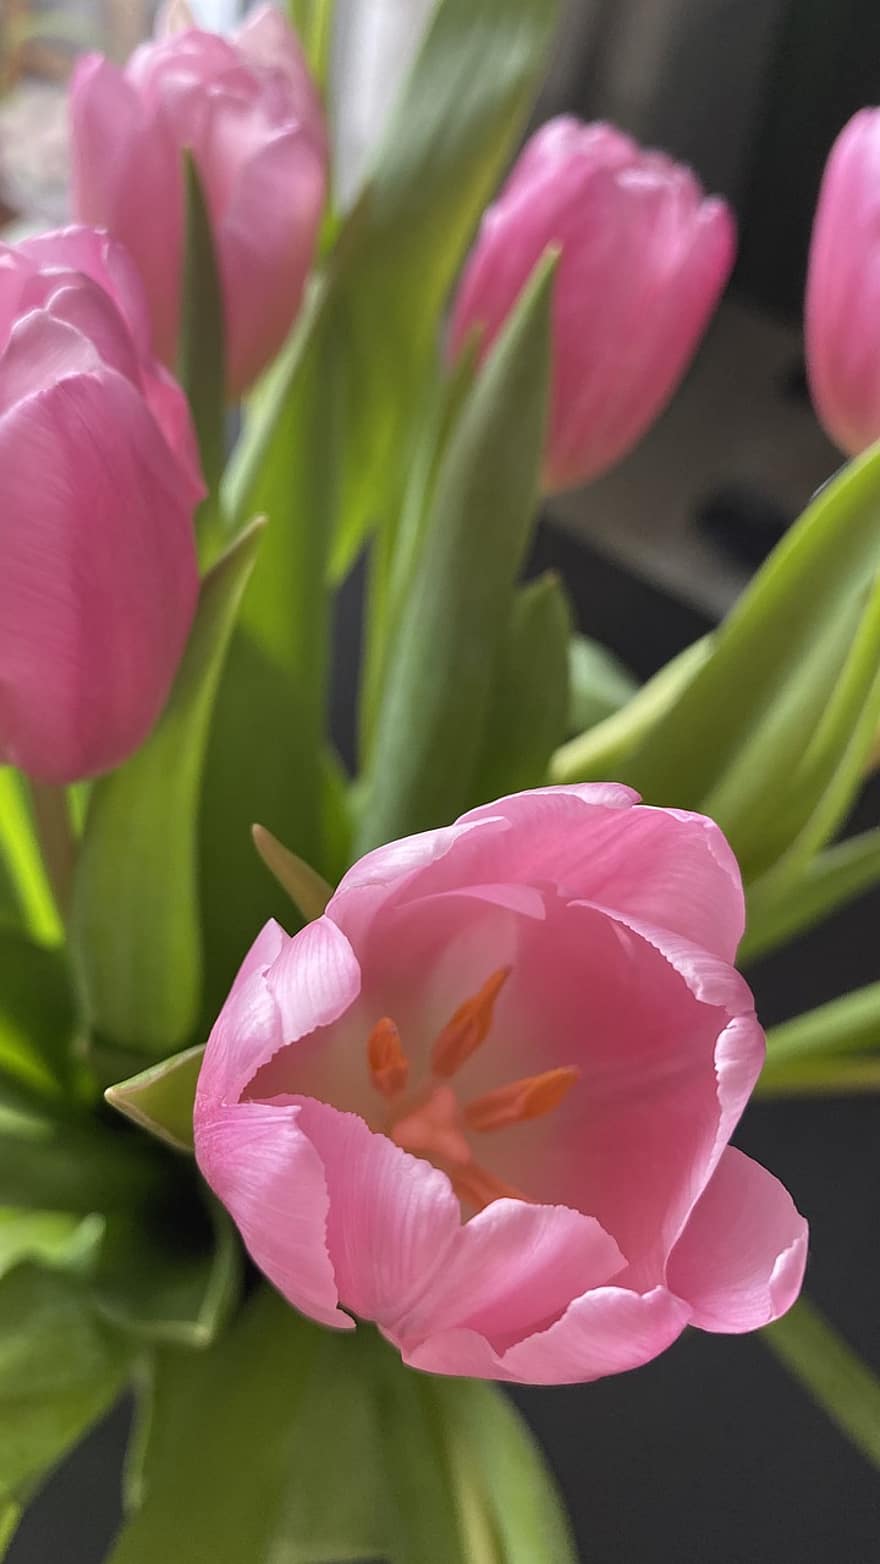 květiny, tulipány, rostlina, květ, jaro, Příroda, květu hlavy, okvětní lístek, list, detail, růžová barva